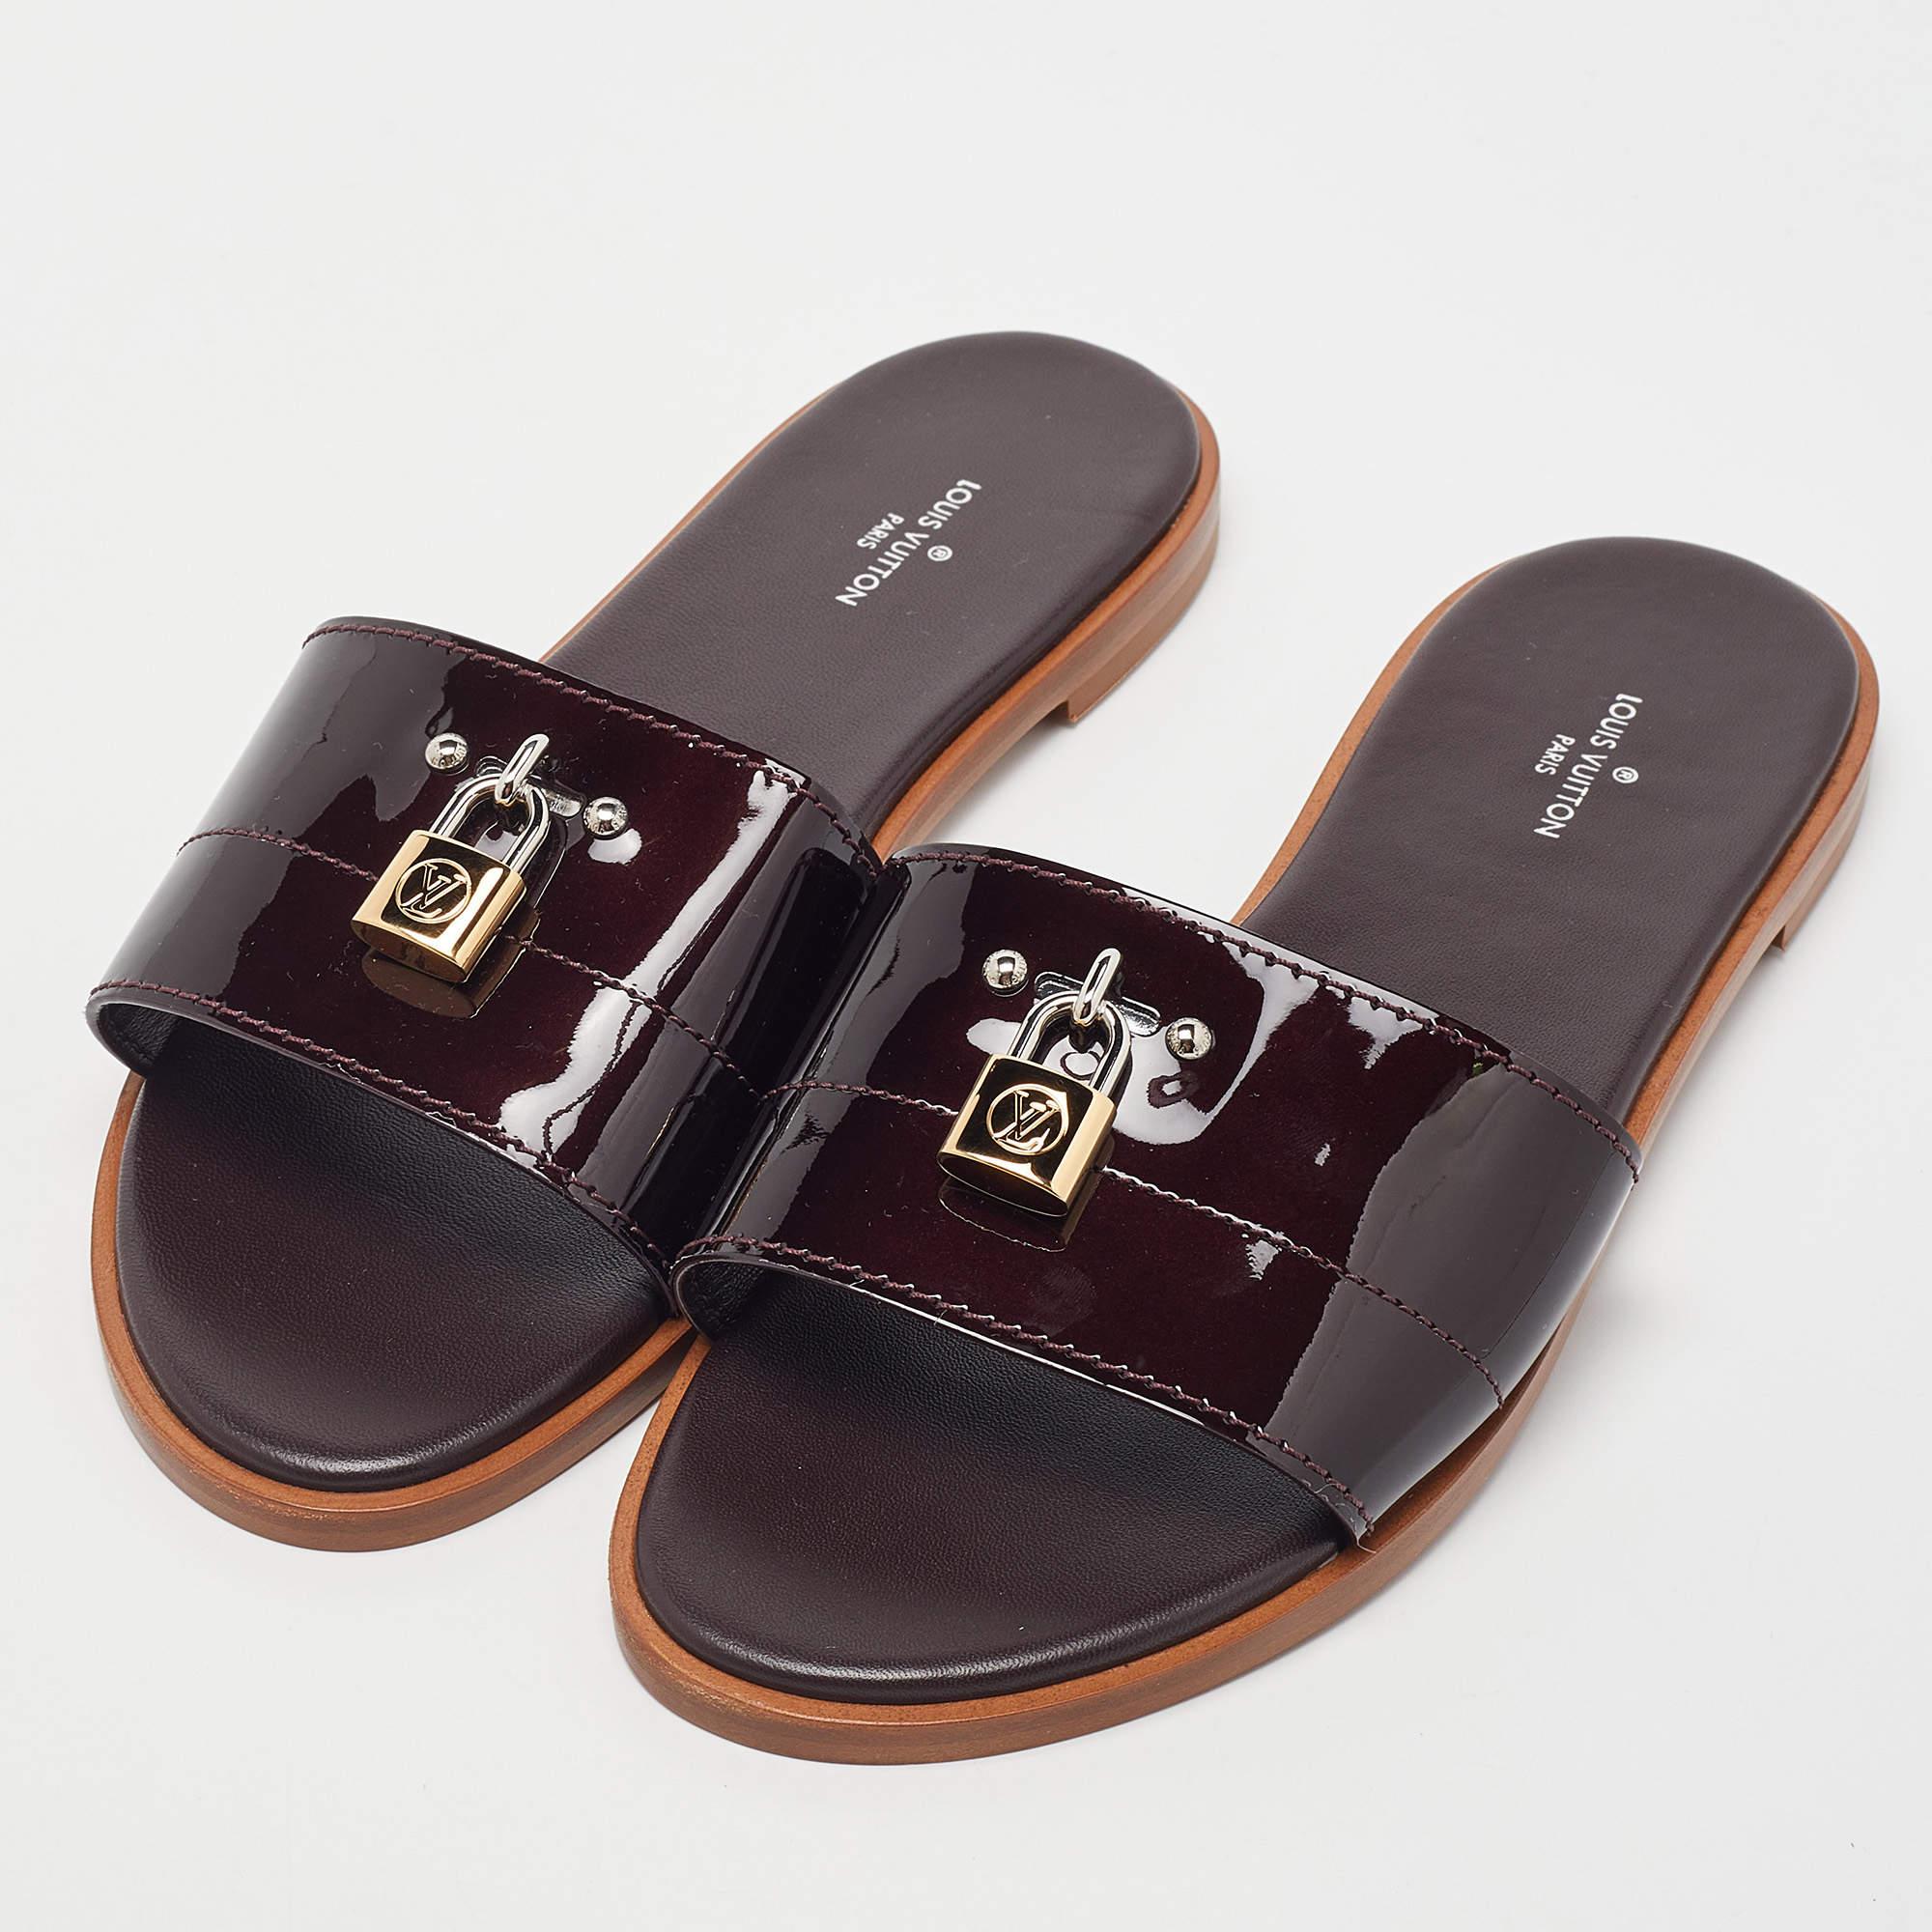 Louis Vuitton Amarante Patent Leather Lock It Flat Sandals Size 38 2